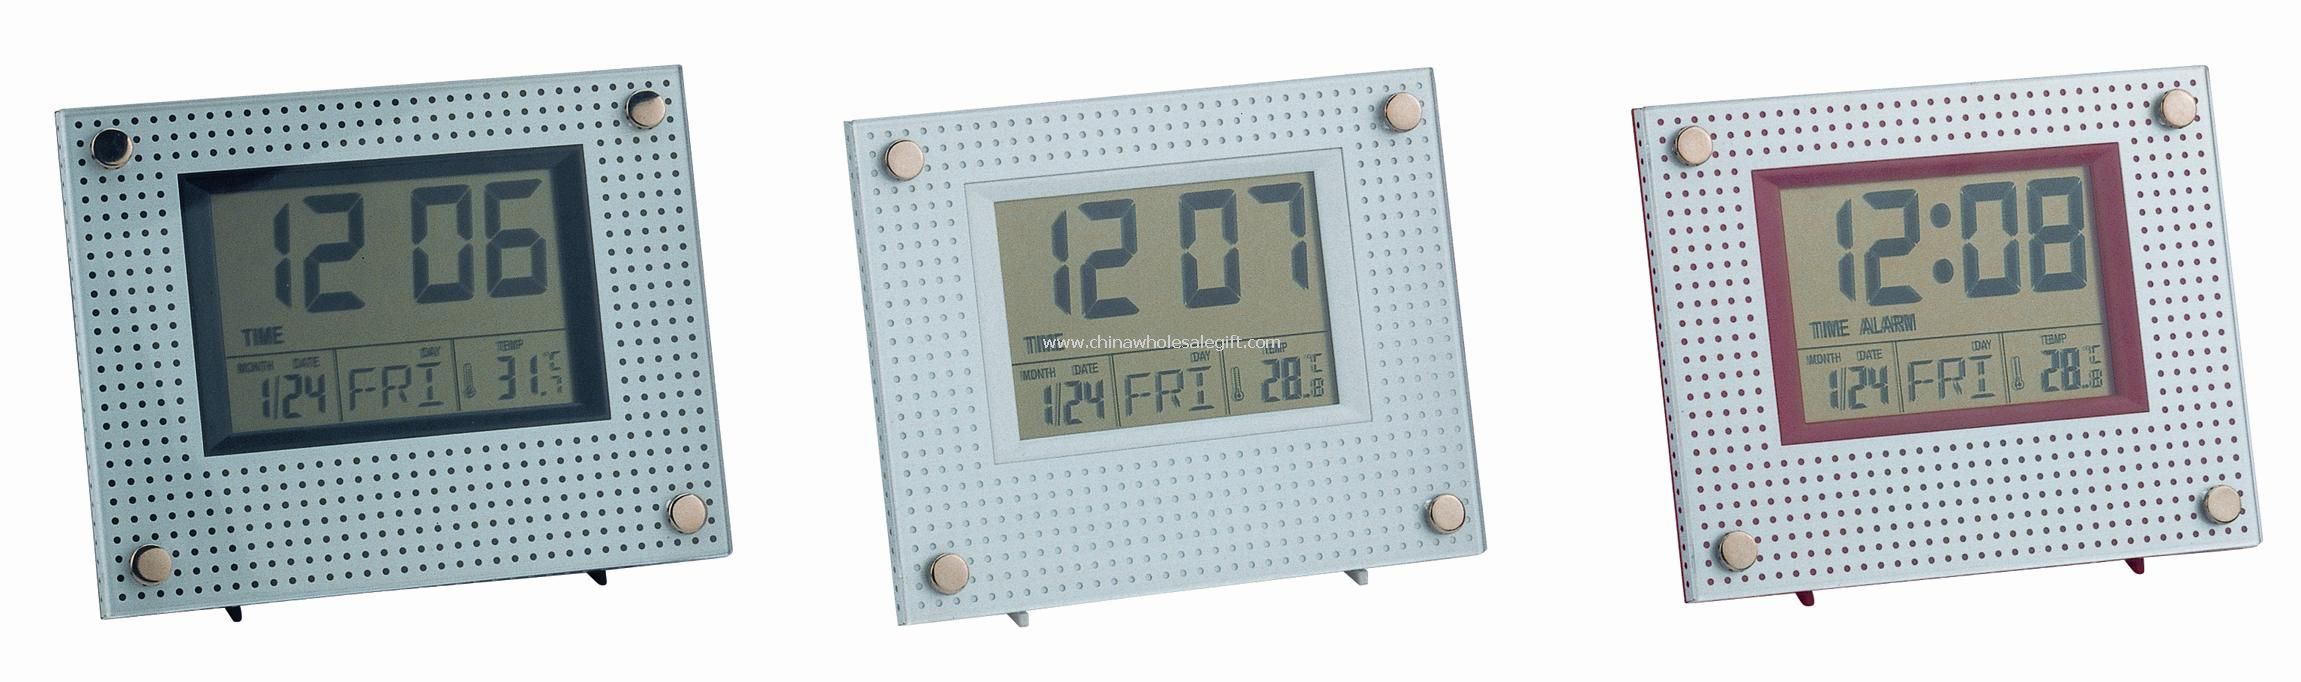 Layar LCD besar Calendar Clock